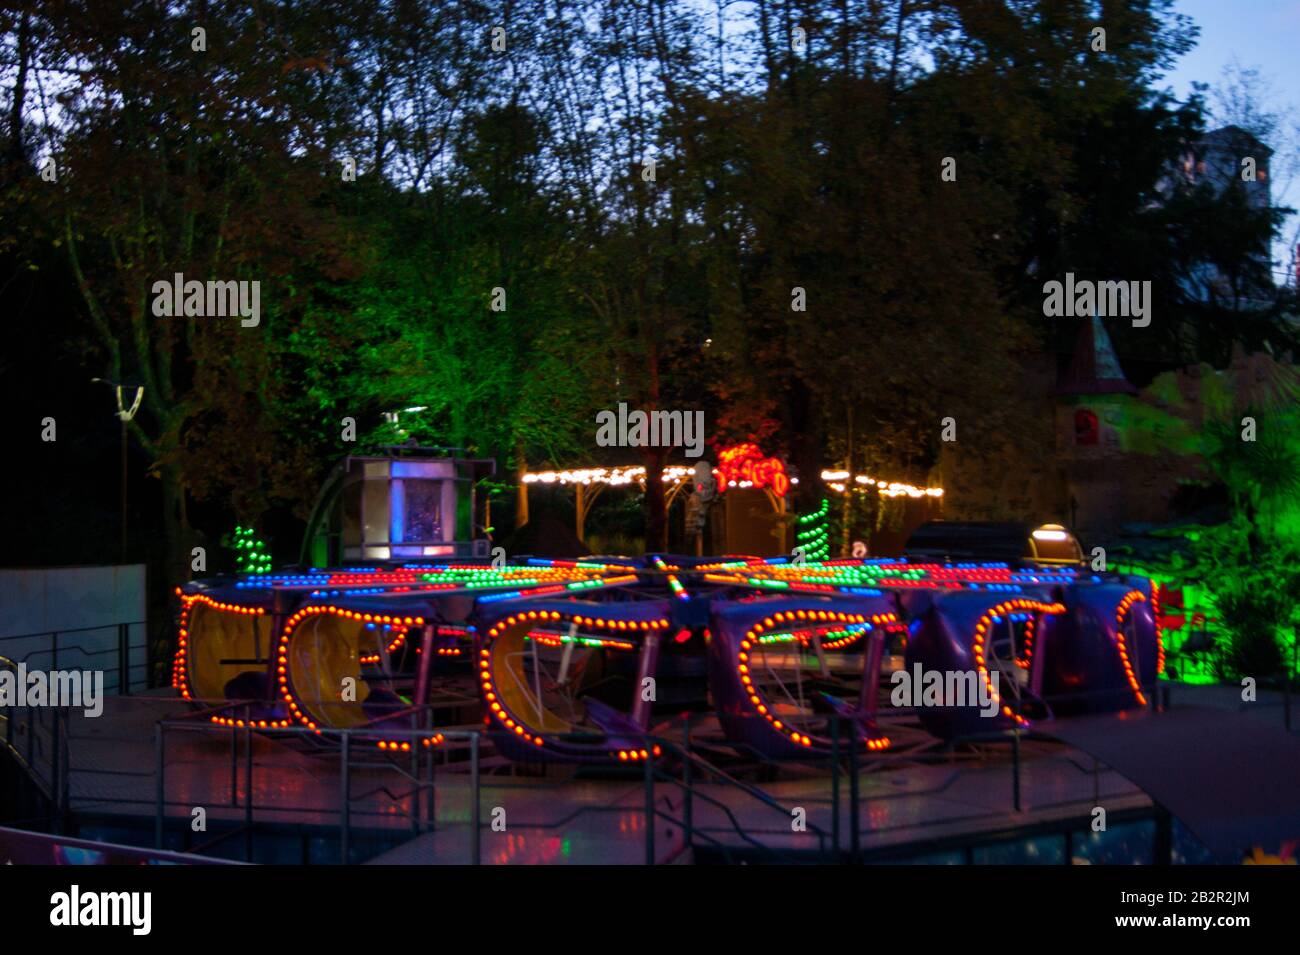 Carousel in luci luminose su un buio estate sud notte contro uno sfondo di alberi e altre attrazioni. Parco, attività, riposo Foto Stock